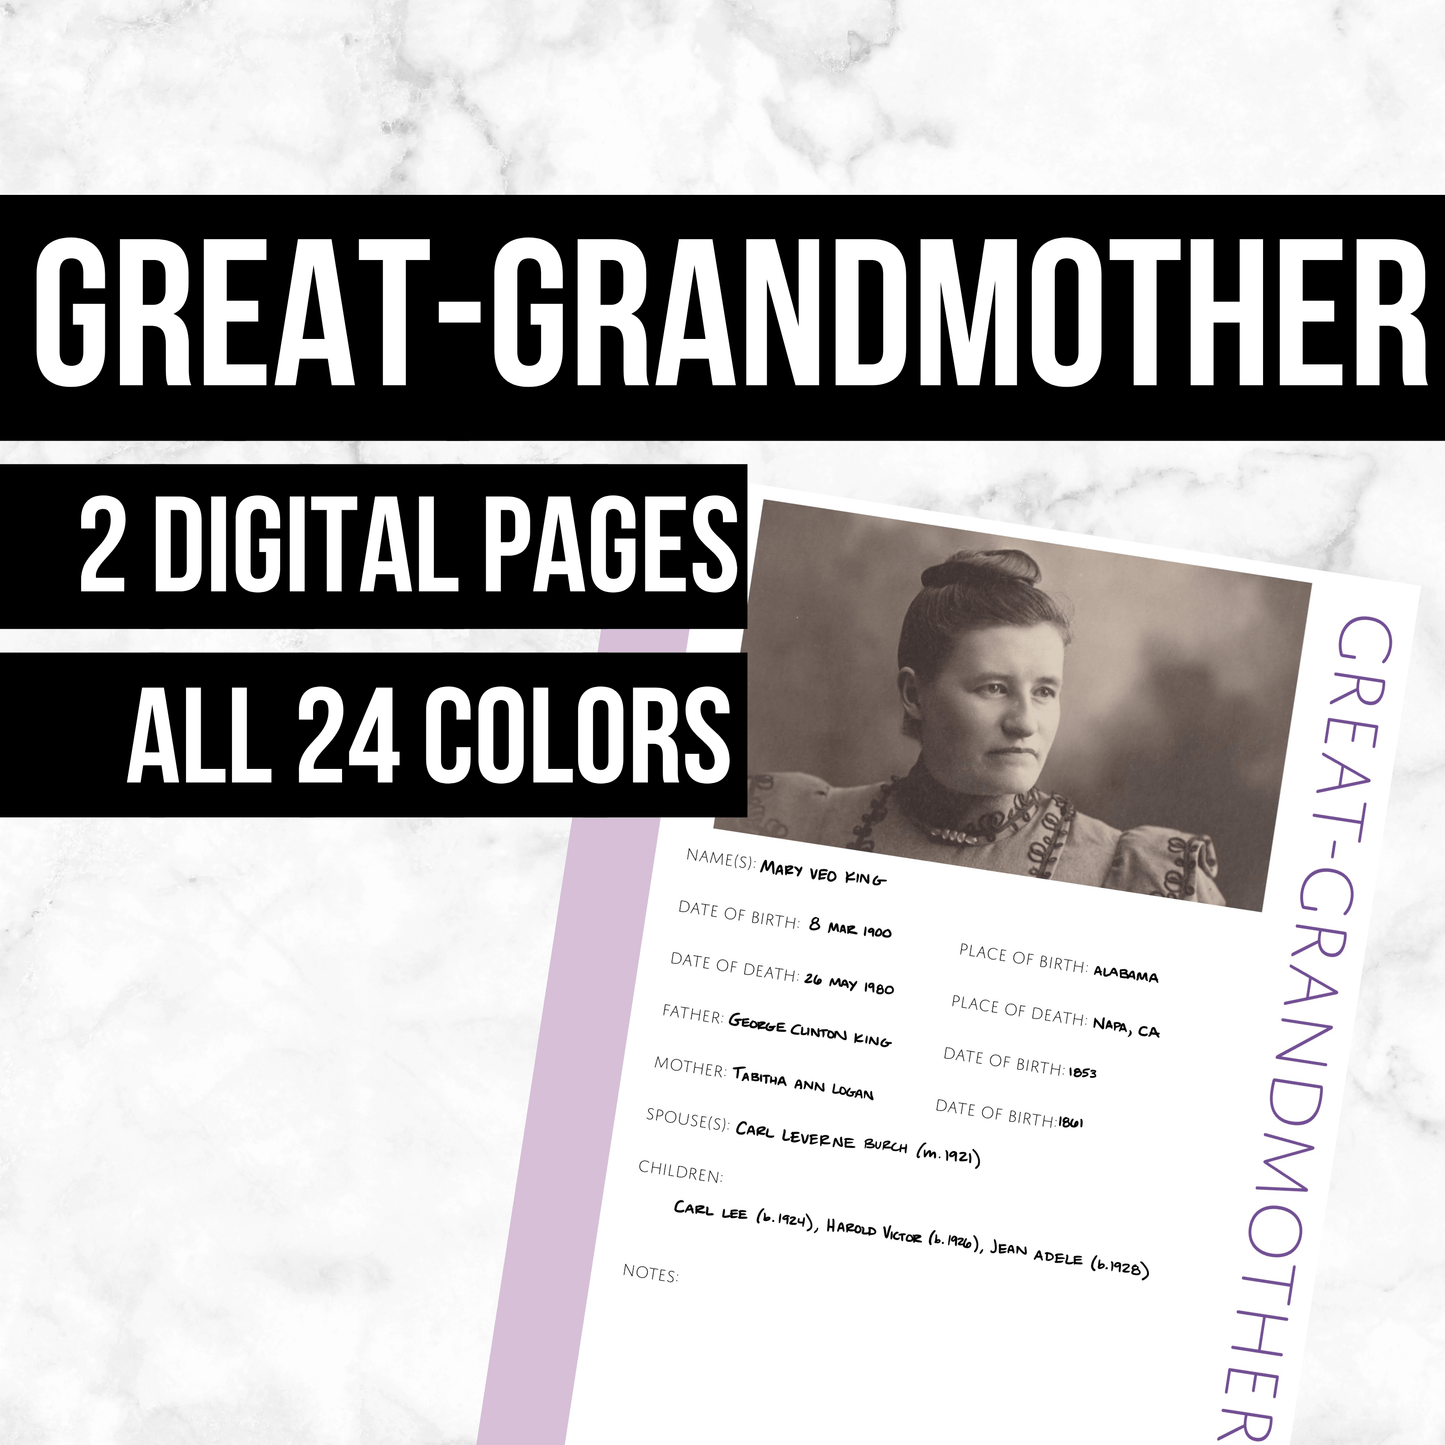 Great-Grandmother: Printable Genealogy Form (Digital Download)